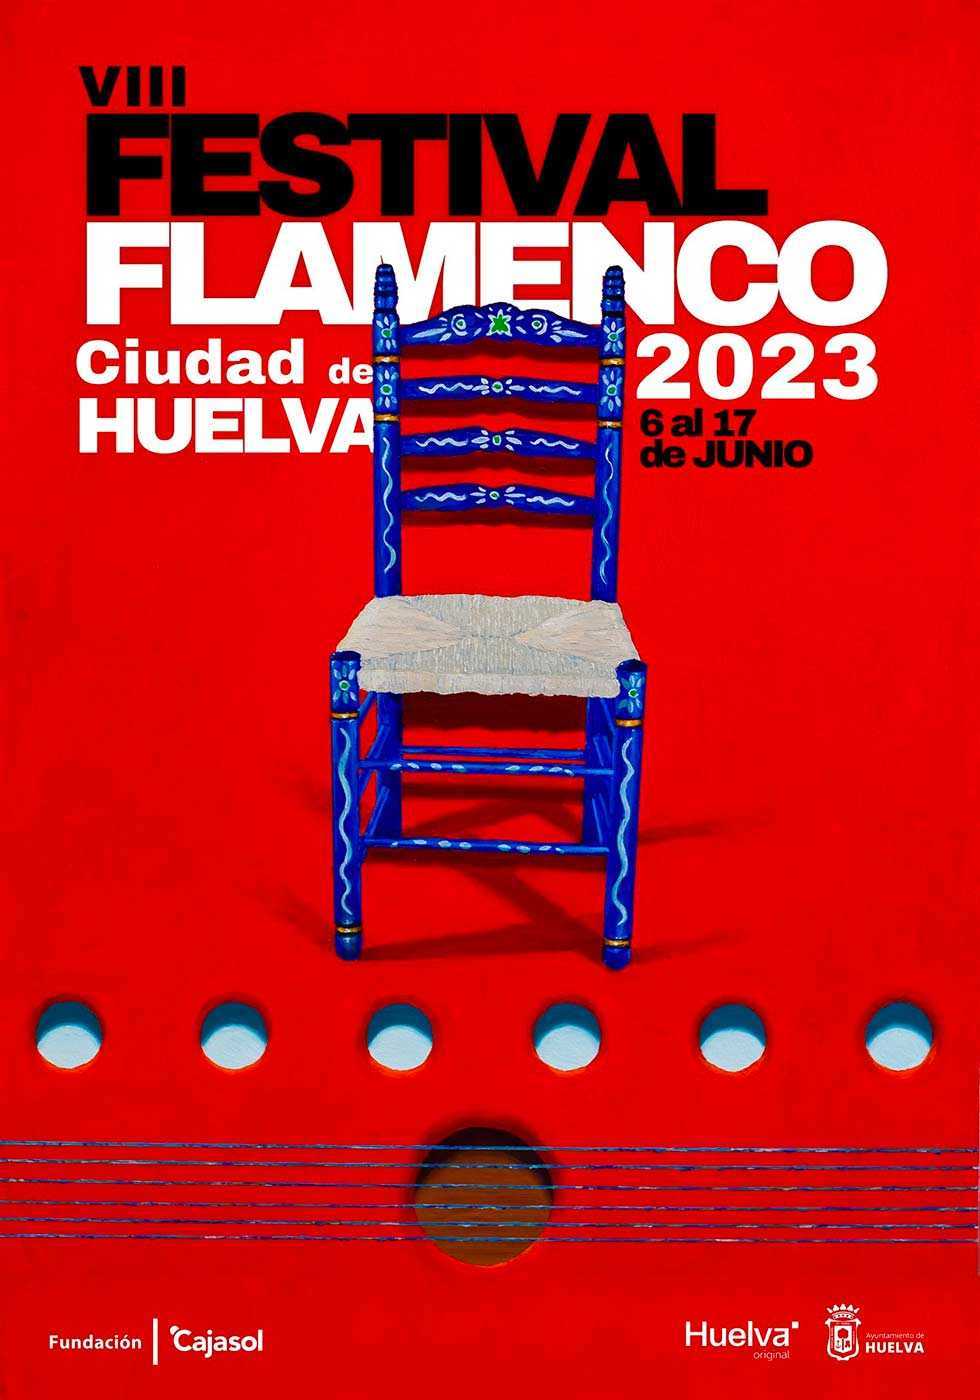 VIII Festival Flamenco Ciudad de Huelva